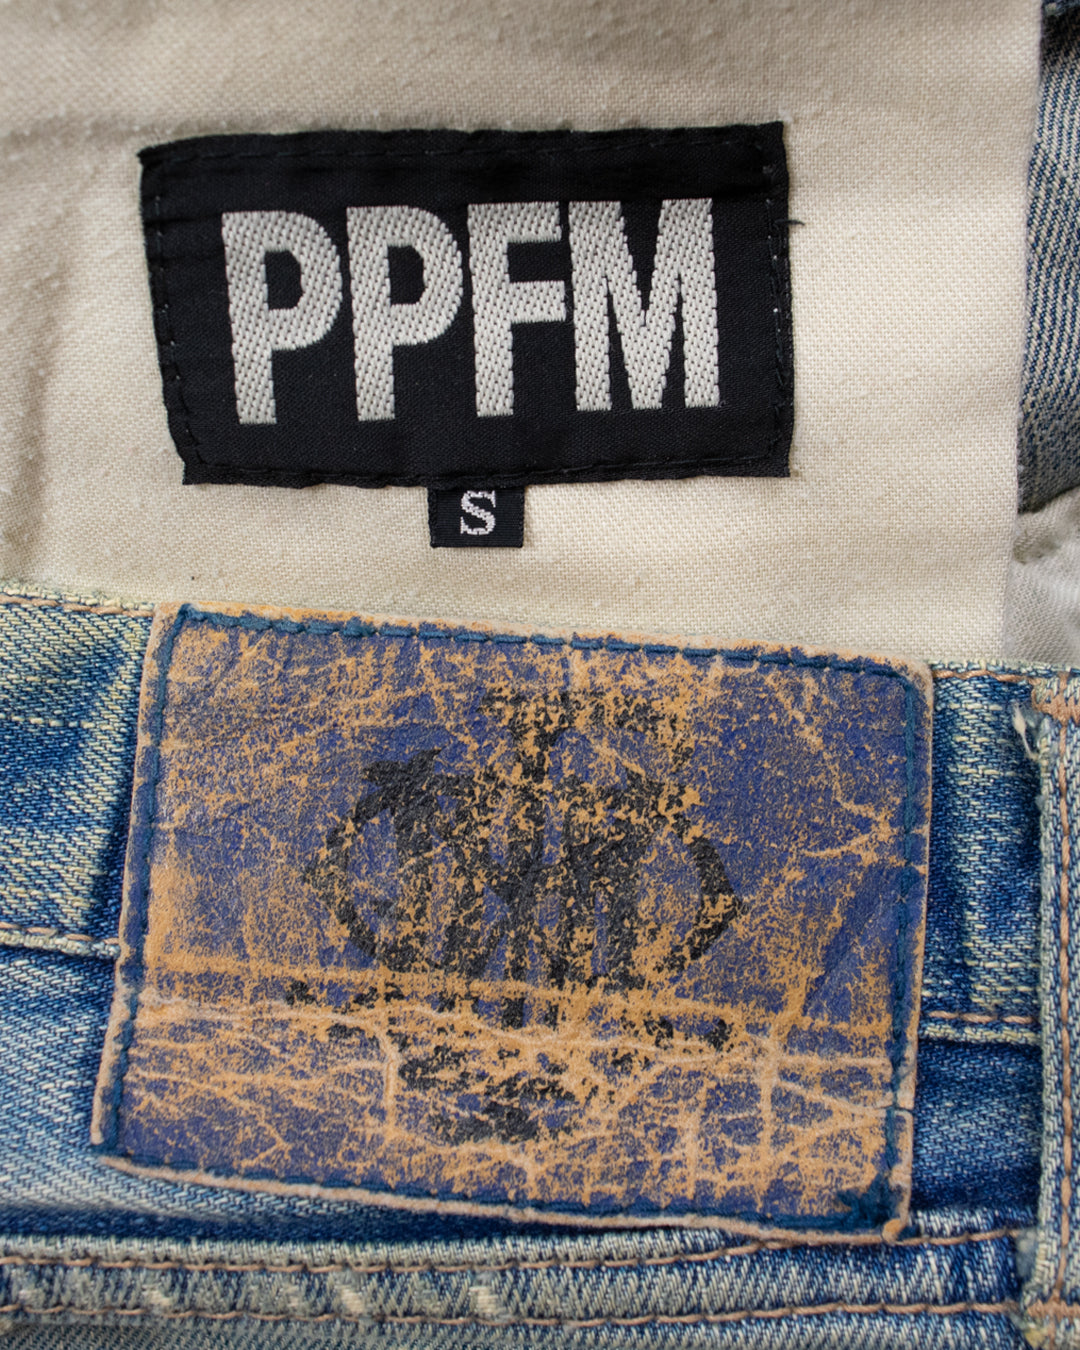 PPFM Distressed Repair Denim